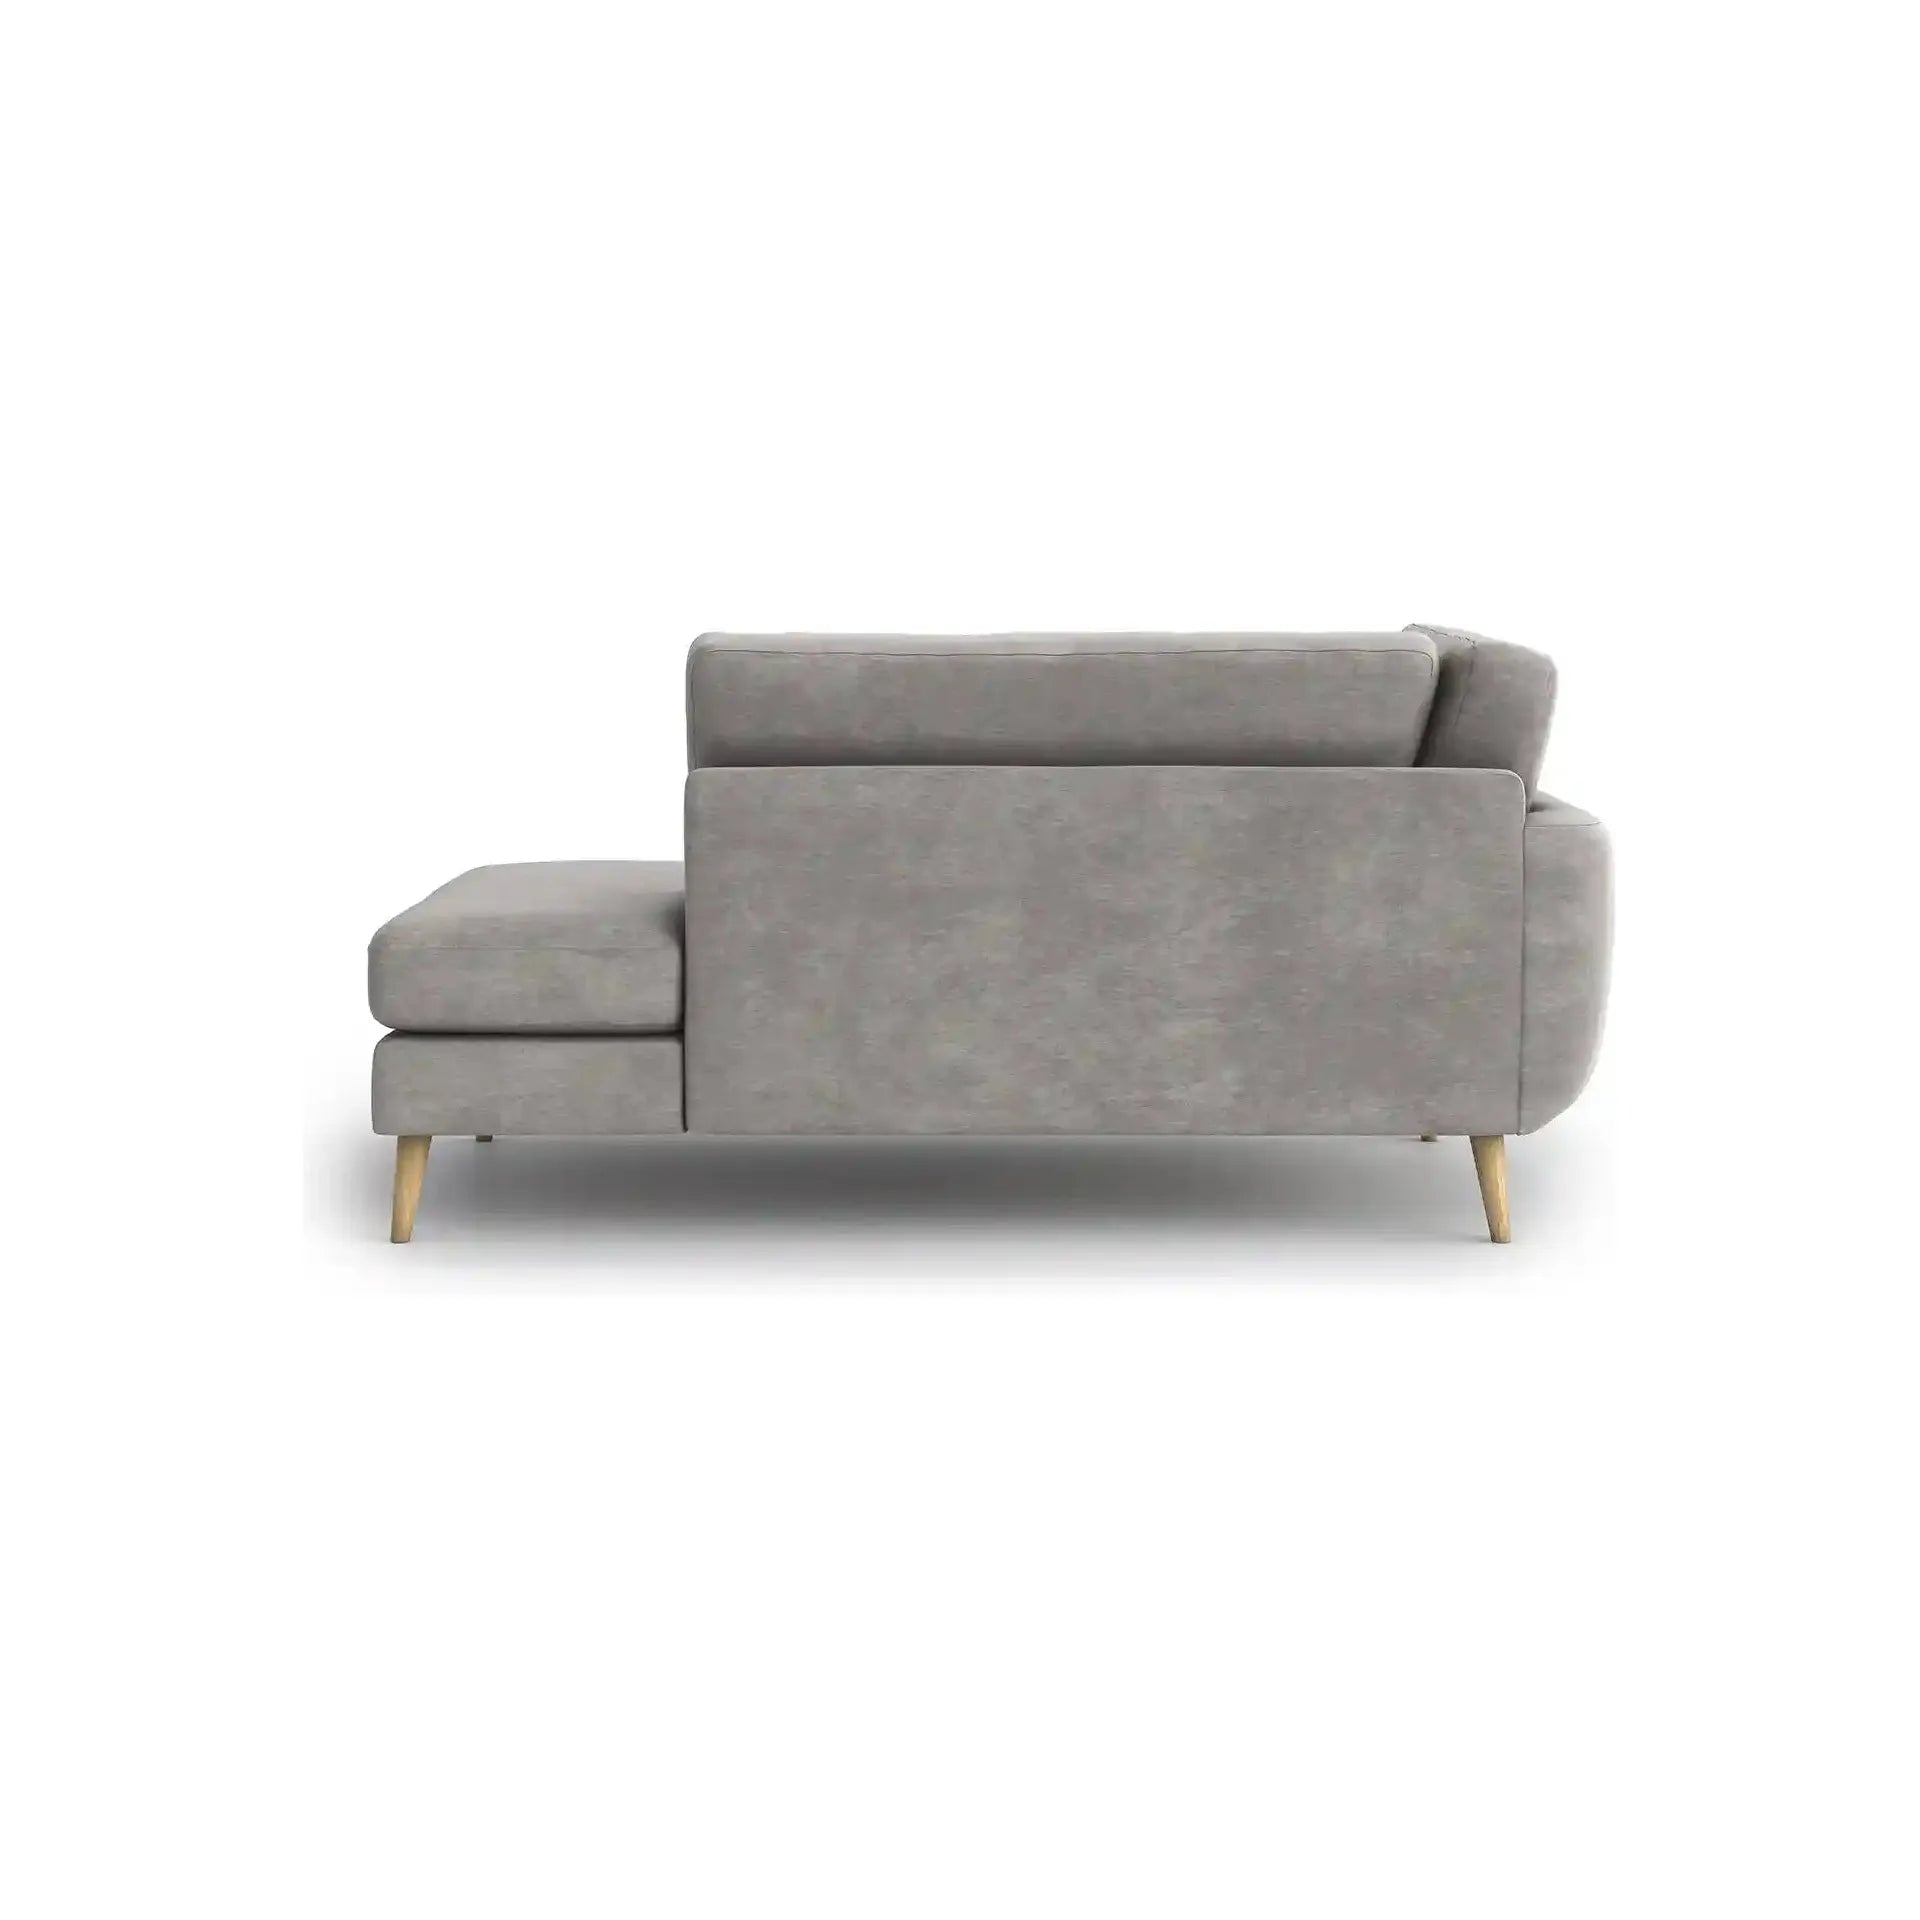 HARRIS 2 vietų sofa, kairė pusė, pilka spalva